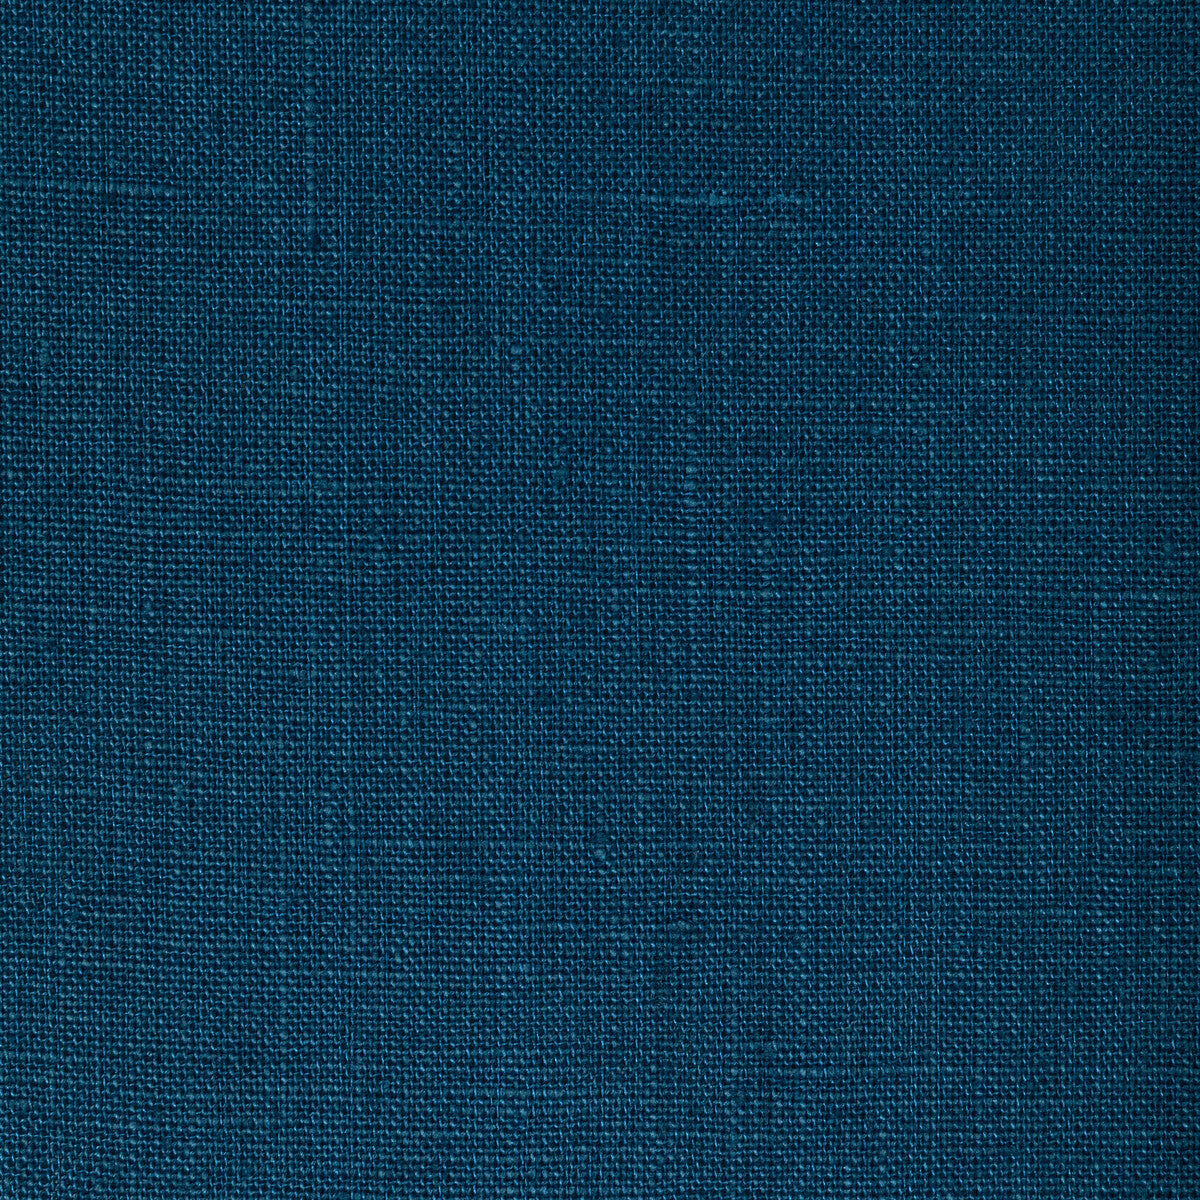 Kravet Basics fabric in 32344-505 color - pattern 32344.505.0 - by Kravet Basics